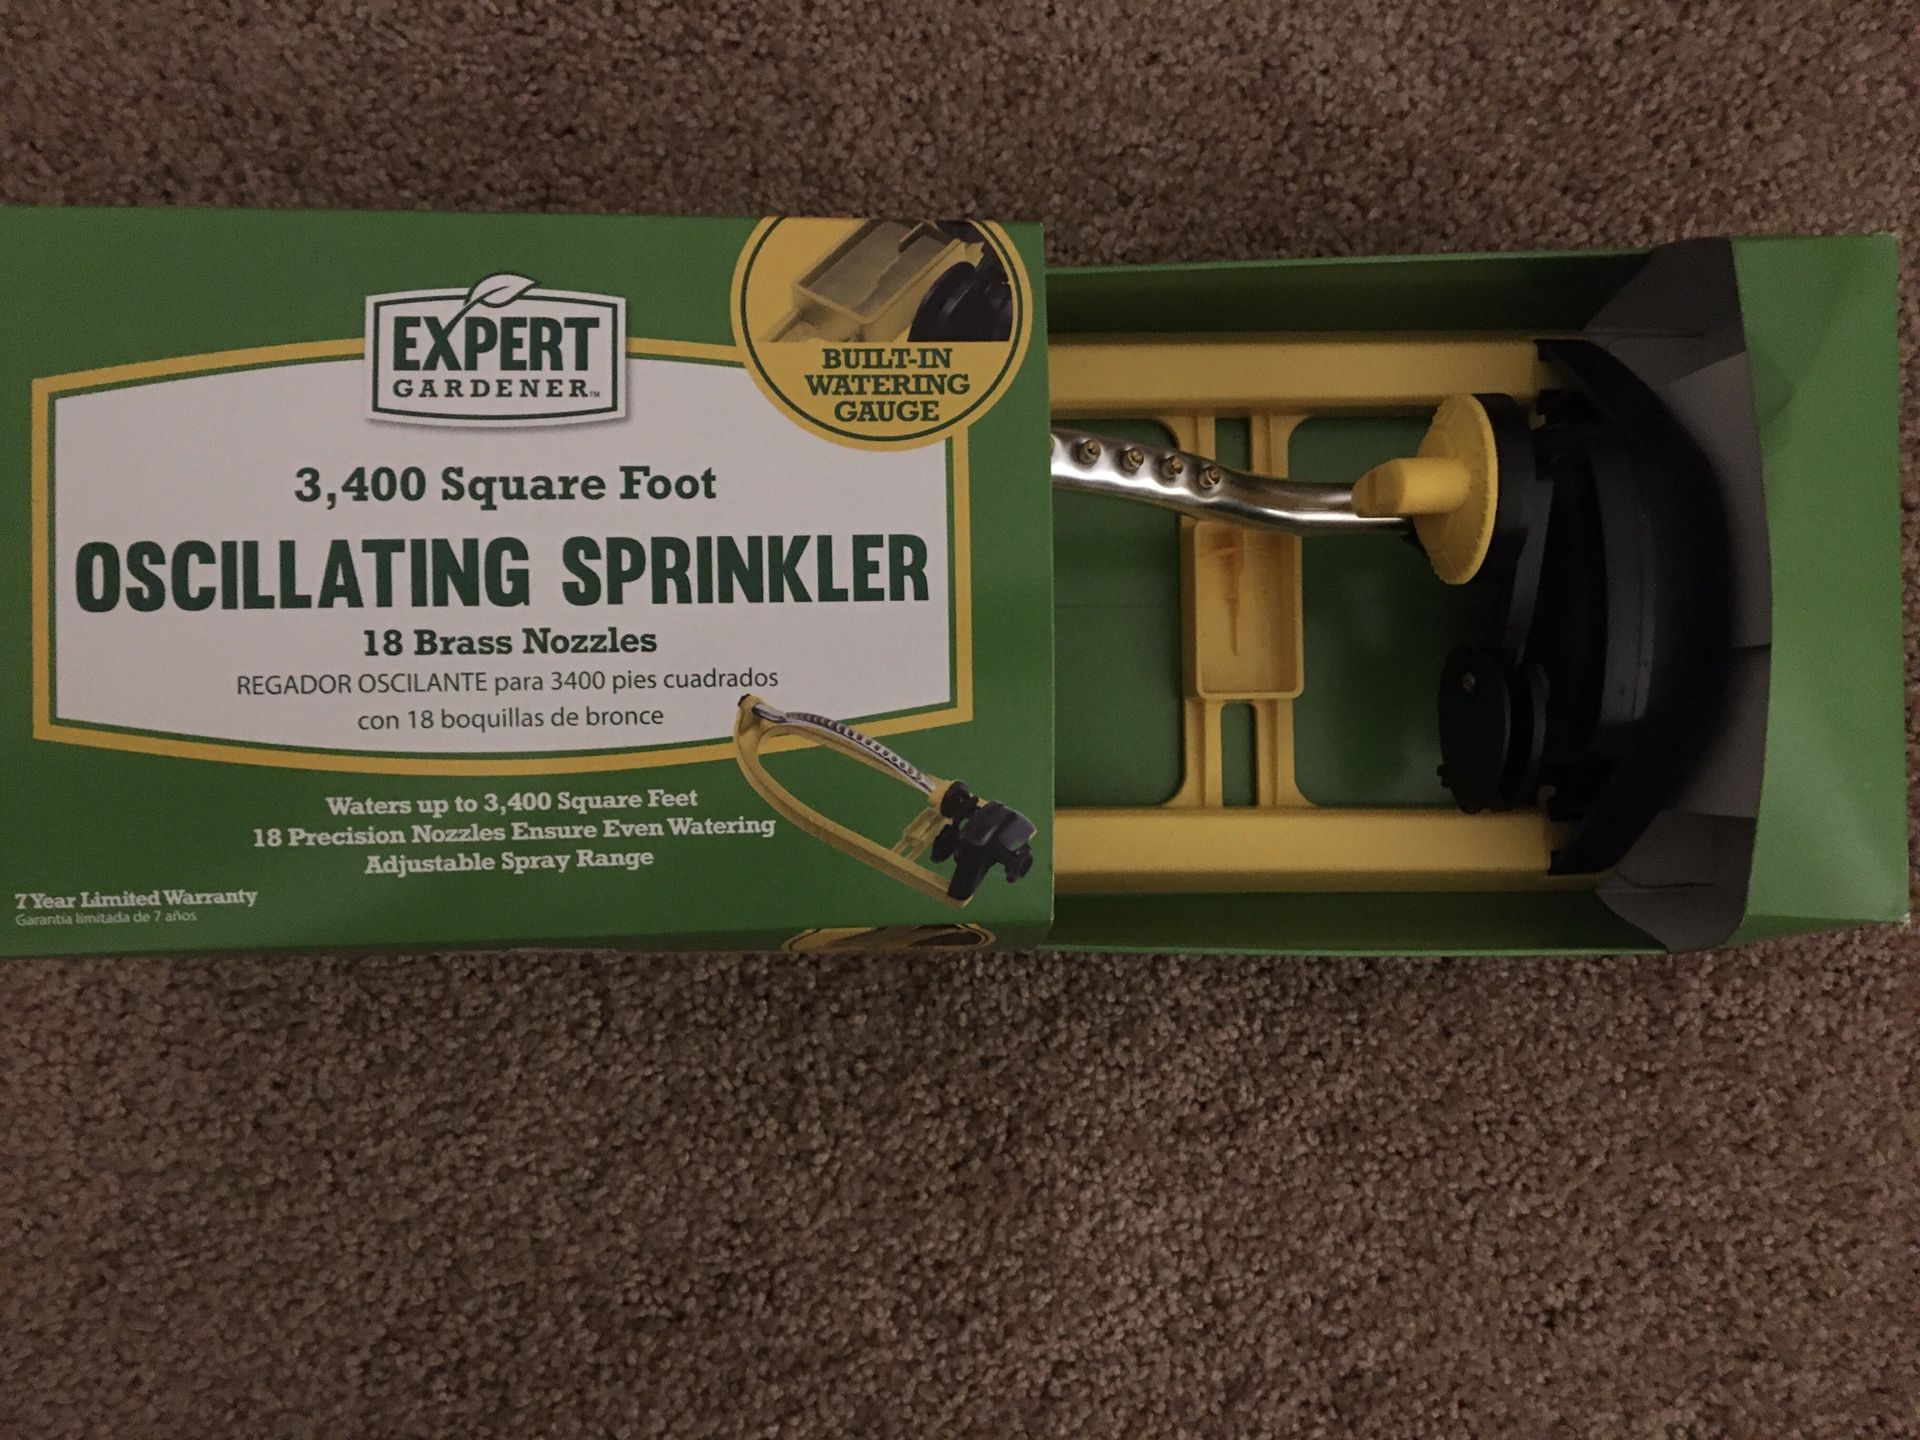 New 3,400 sq. ft. Oscillating Sprinkler